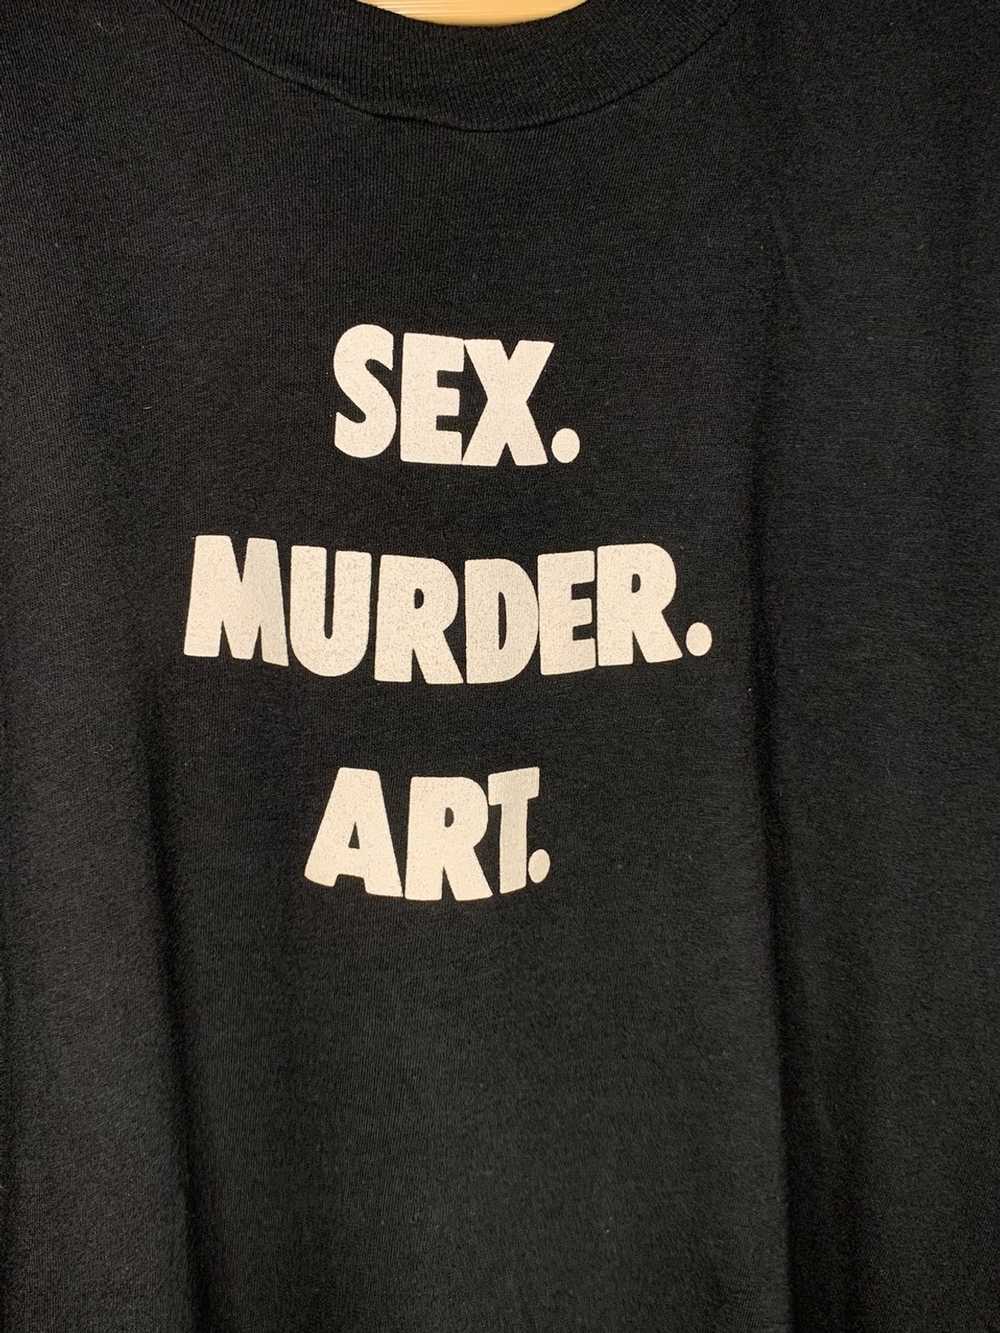 Band Tees × Slayer × Vintage 1980s Sex.Murder.Art… - image 2